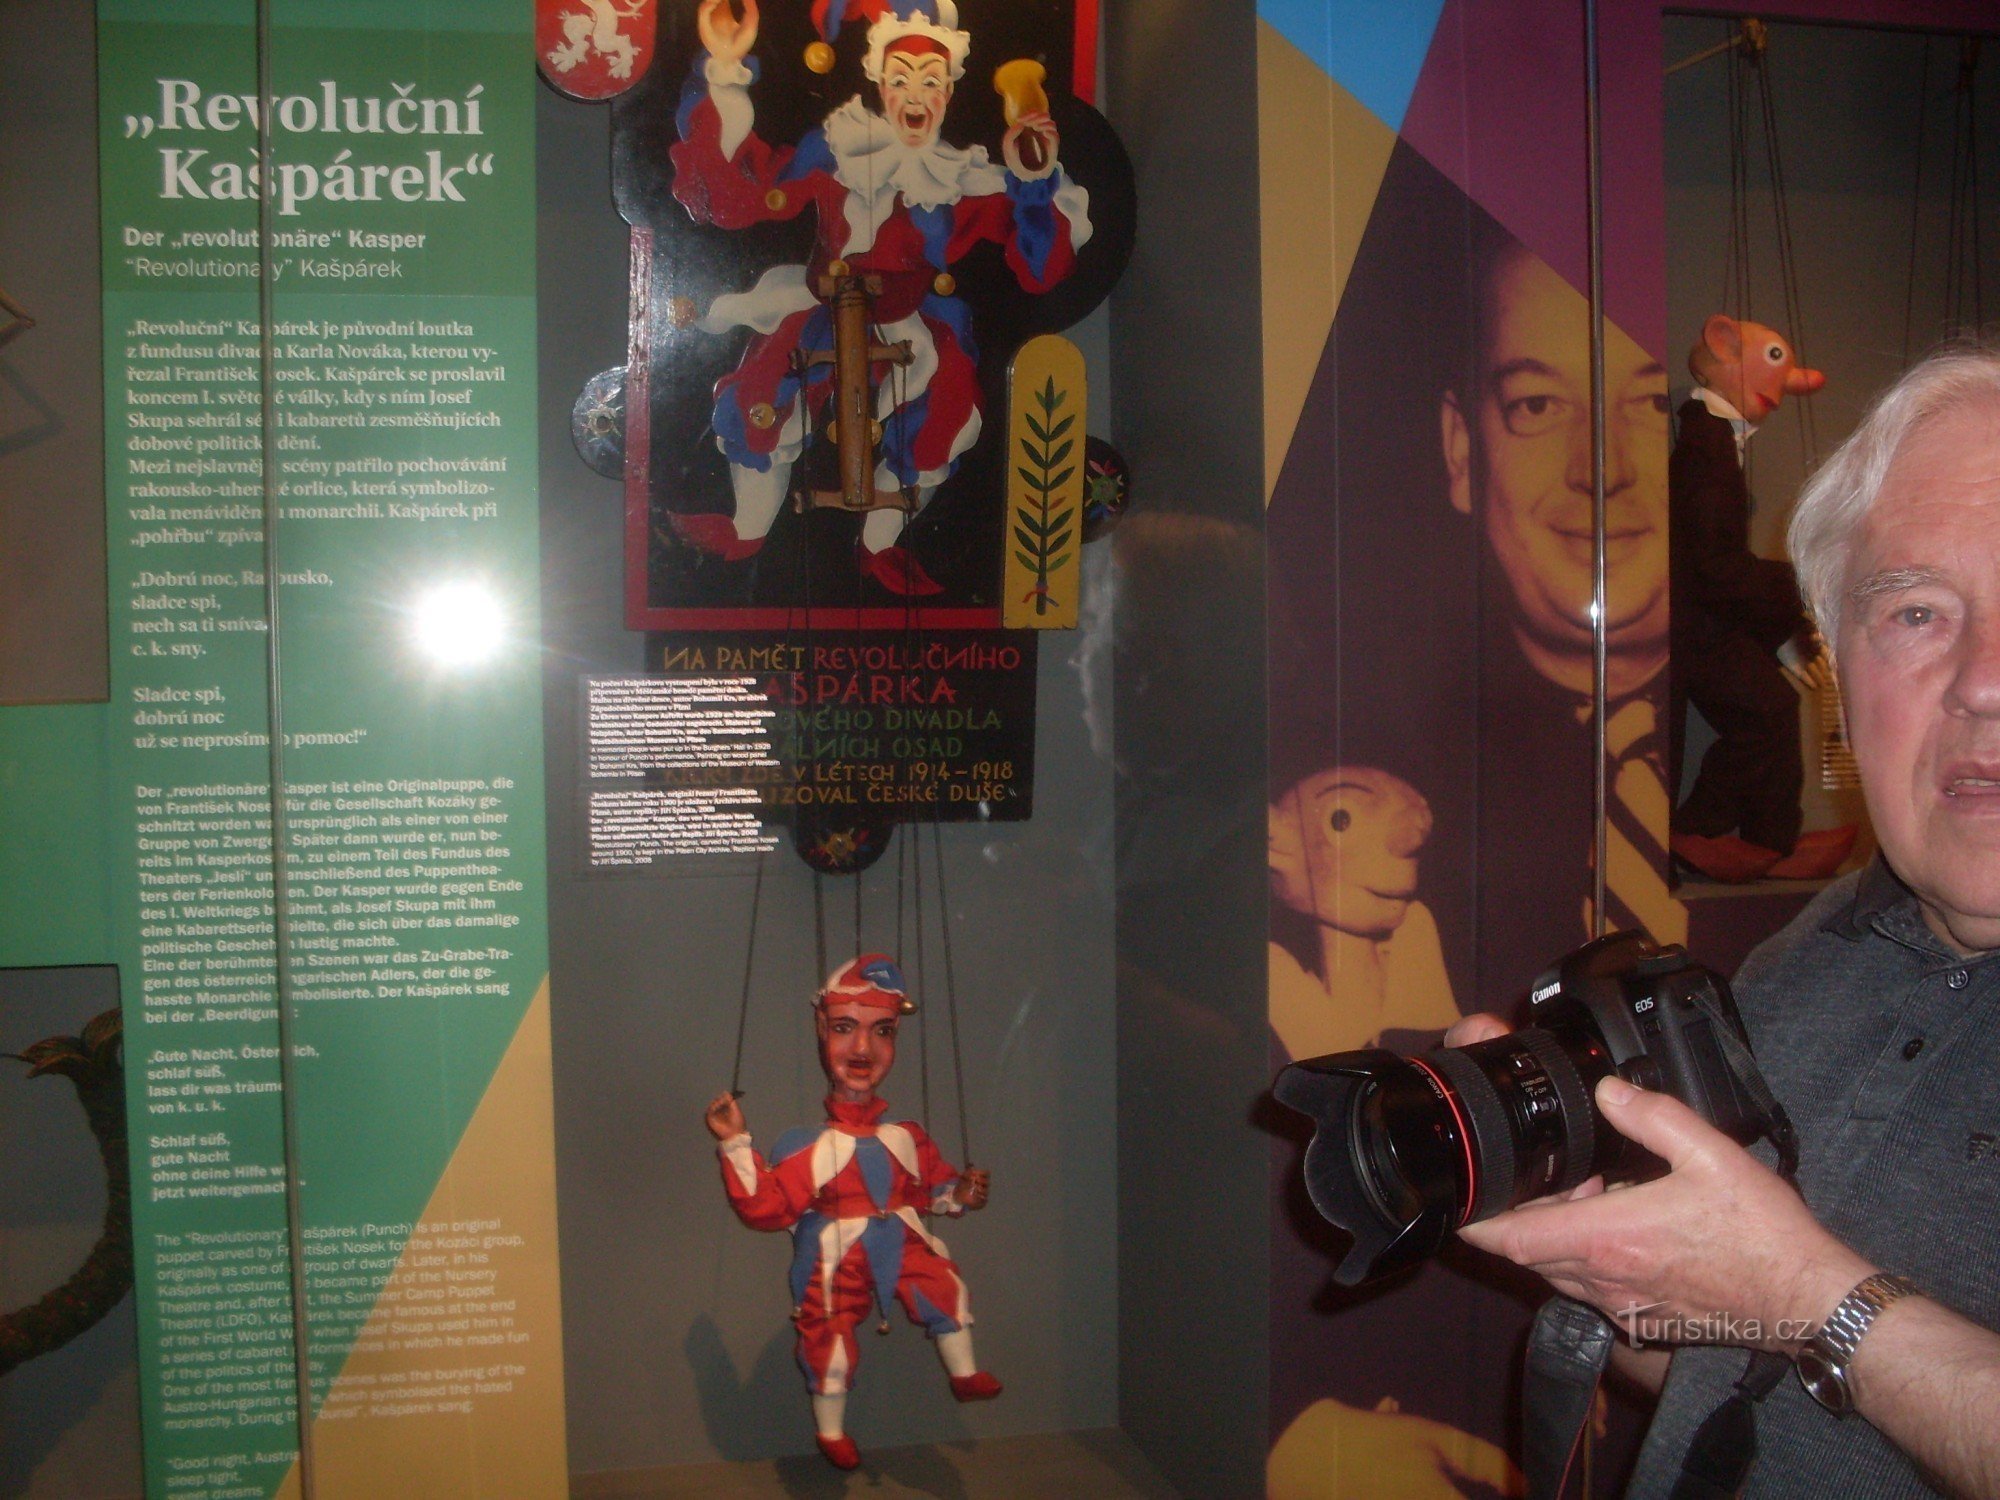 チェコ共和国の人形劇の歴史は、カシュパルカの人形劇を思い起こさせます。